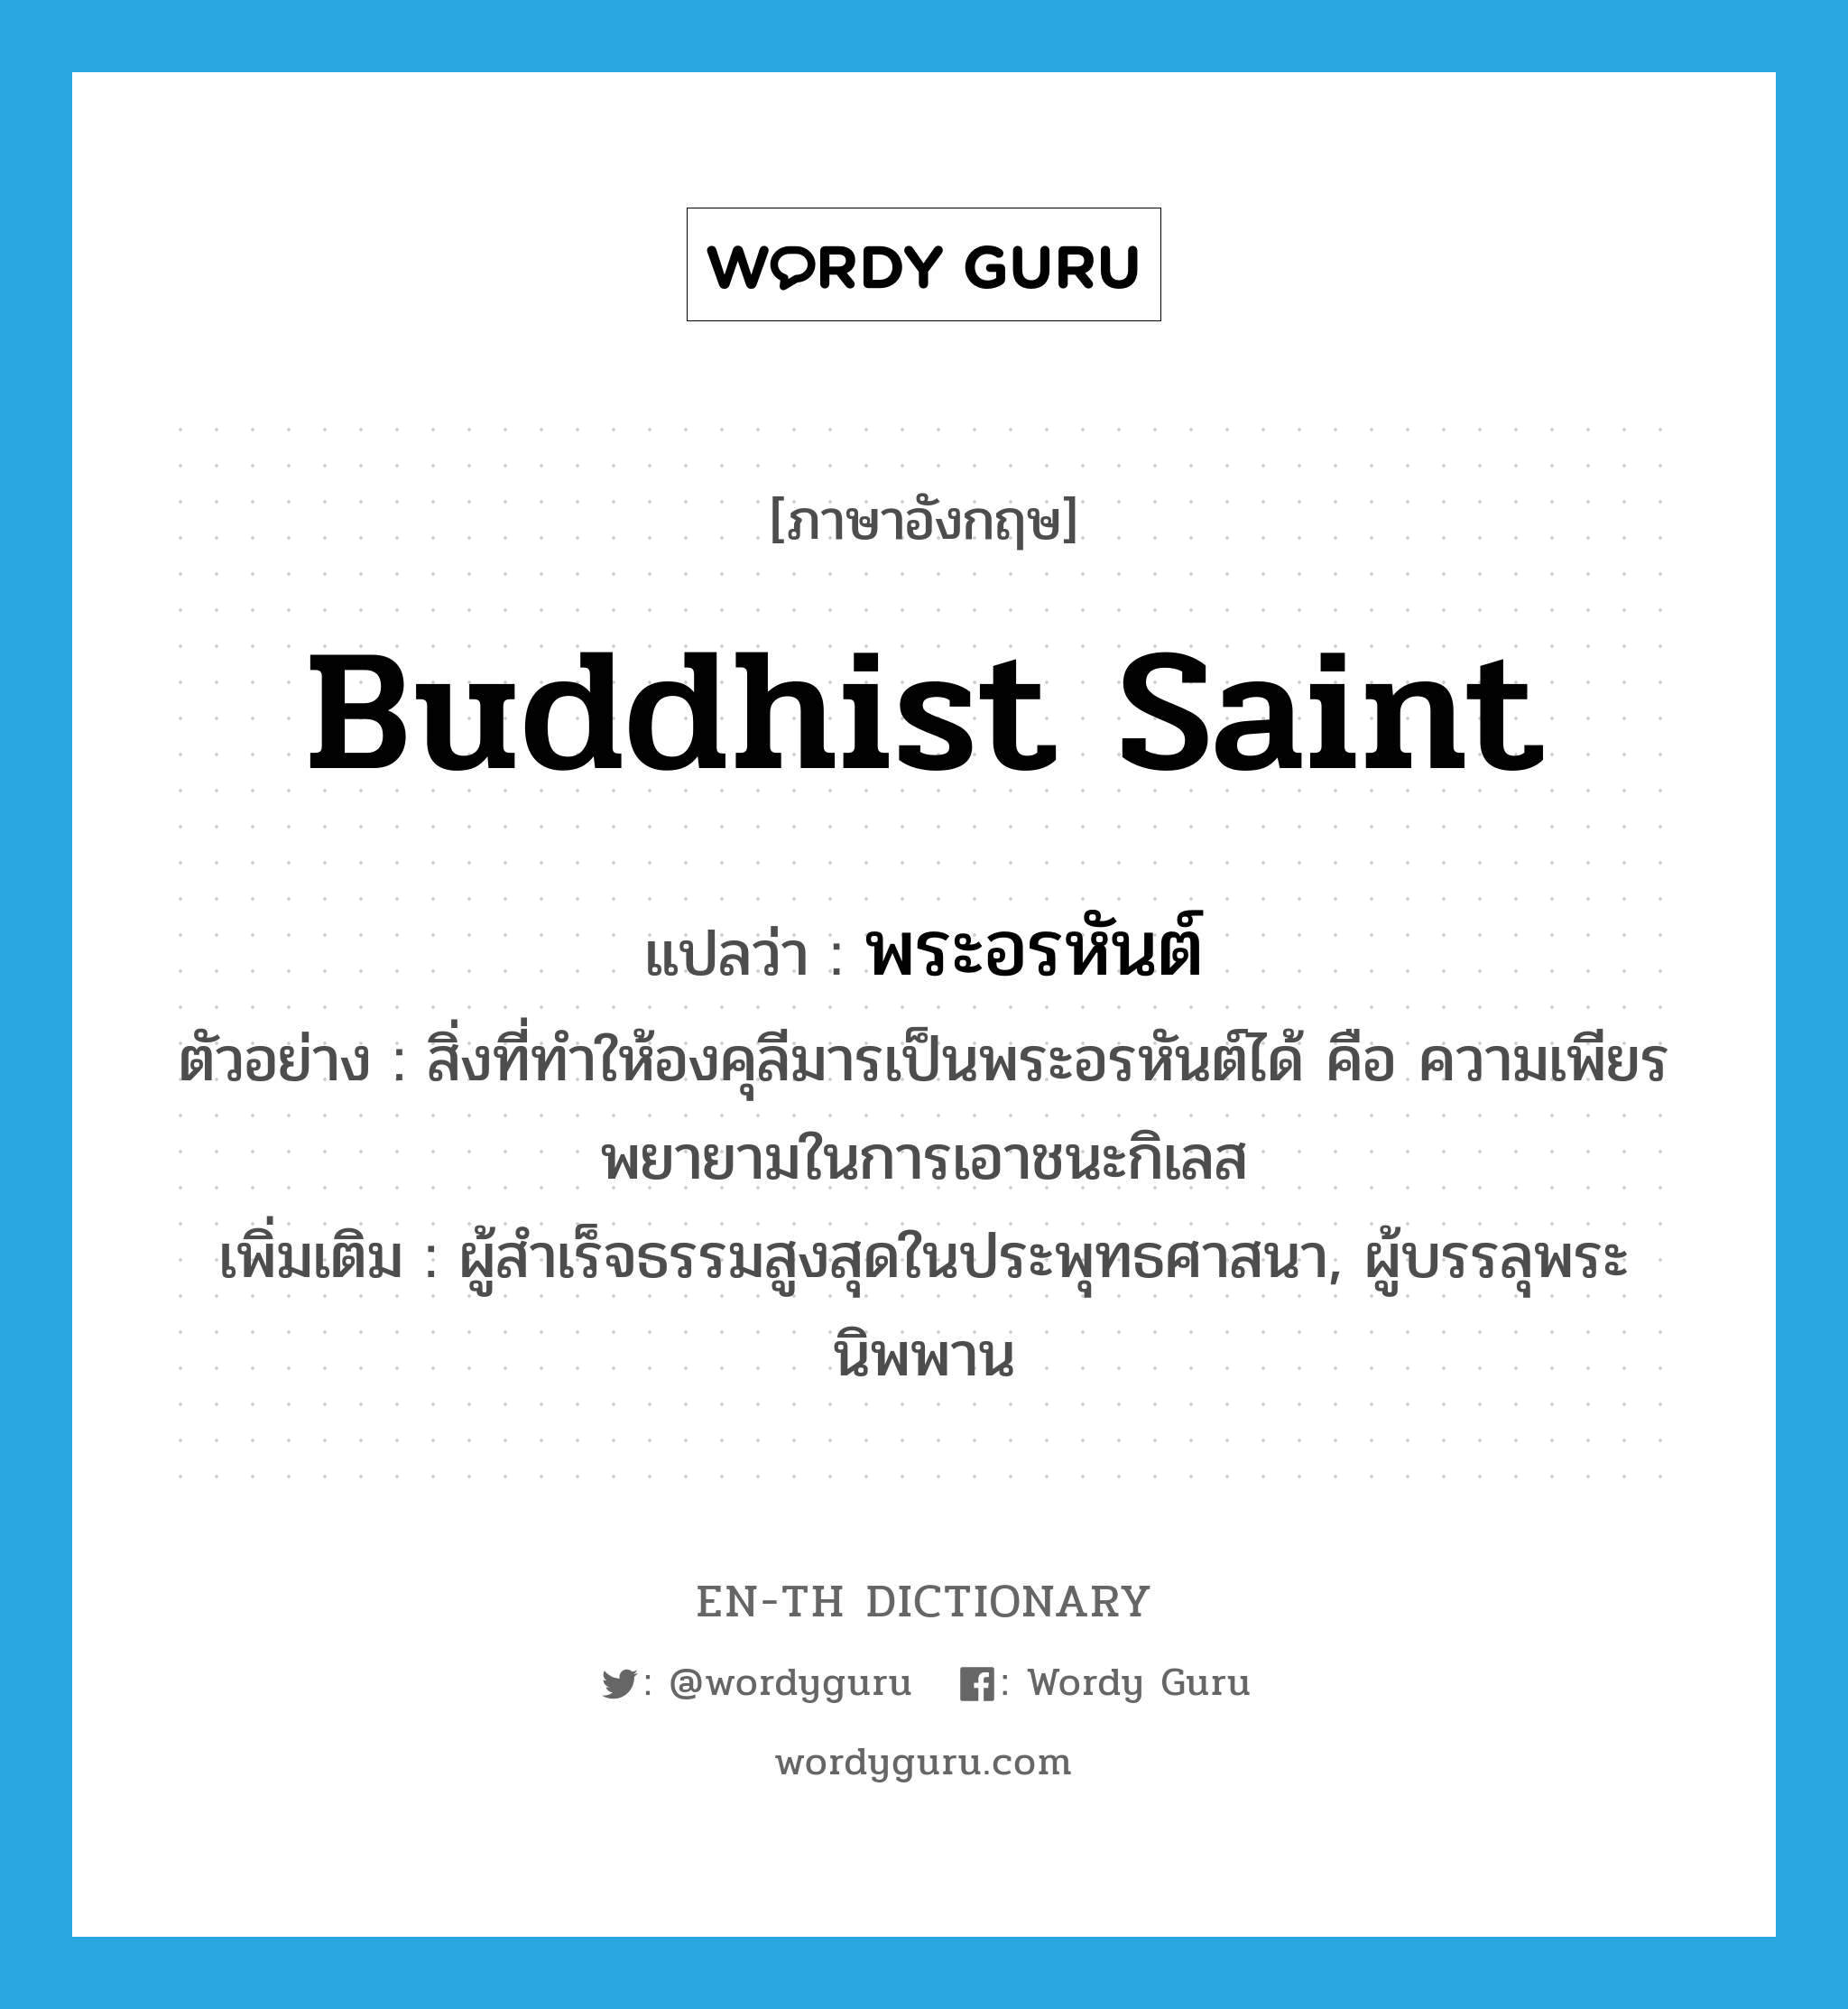 Buddhist saint แปลว่า?, คำศัพท์ภาษาอังกฤษ Buddhist saint แปลว่า พระอรหันต์ ประเภท N ตัวอย่าง สิ่งที่ทำให้องคุลีมารเป็นพระอรหันต์ได้ คือ ความเพียรพยายามในการเอาชนะกิเลส เพิ่มเติม ผู้สำเร็จธรรมสูงสุดในประพุทธศาสนา, ผู้บรรลุพระนิพพาน หมวด N